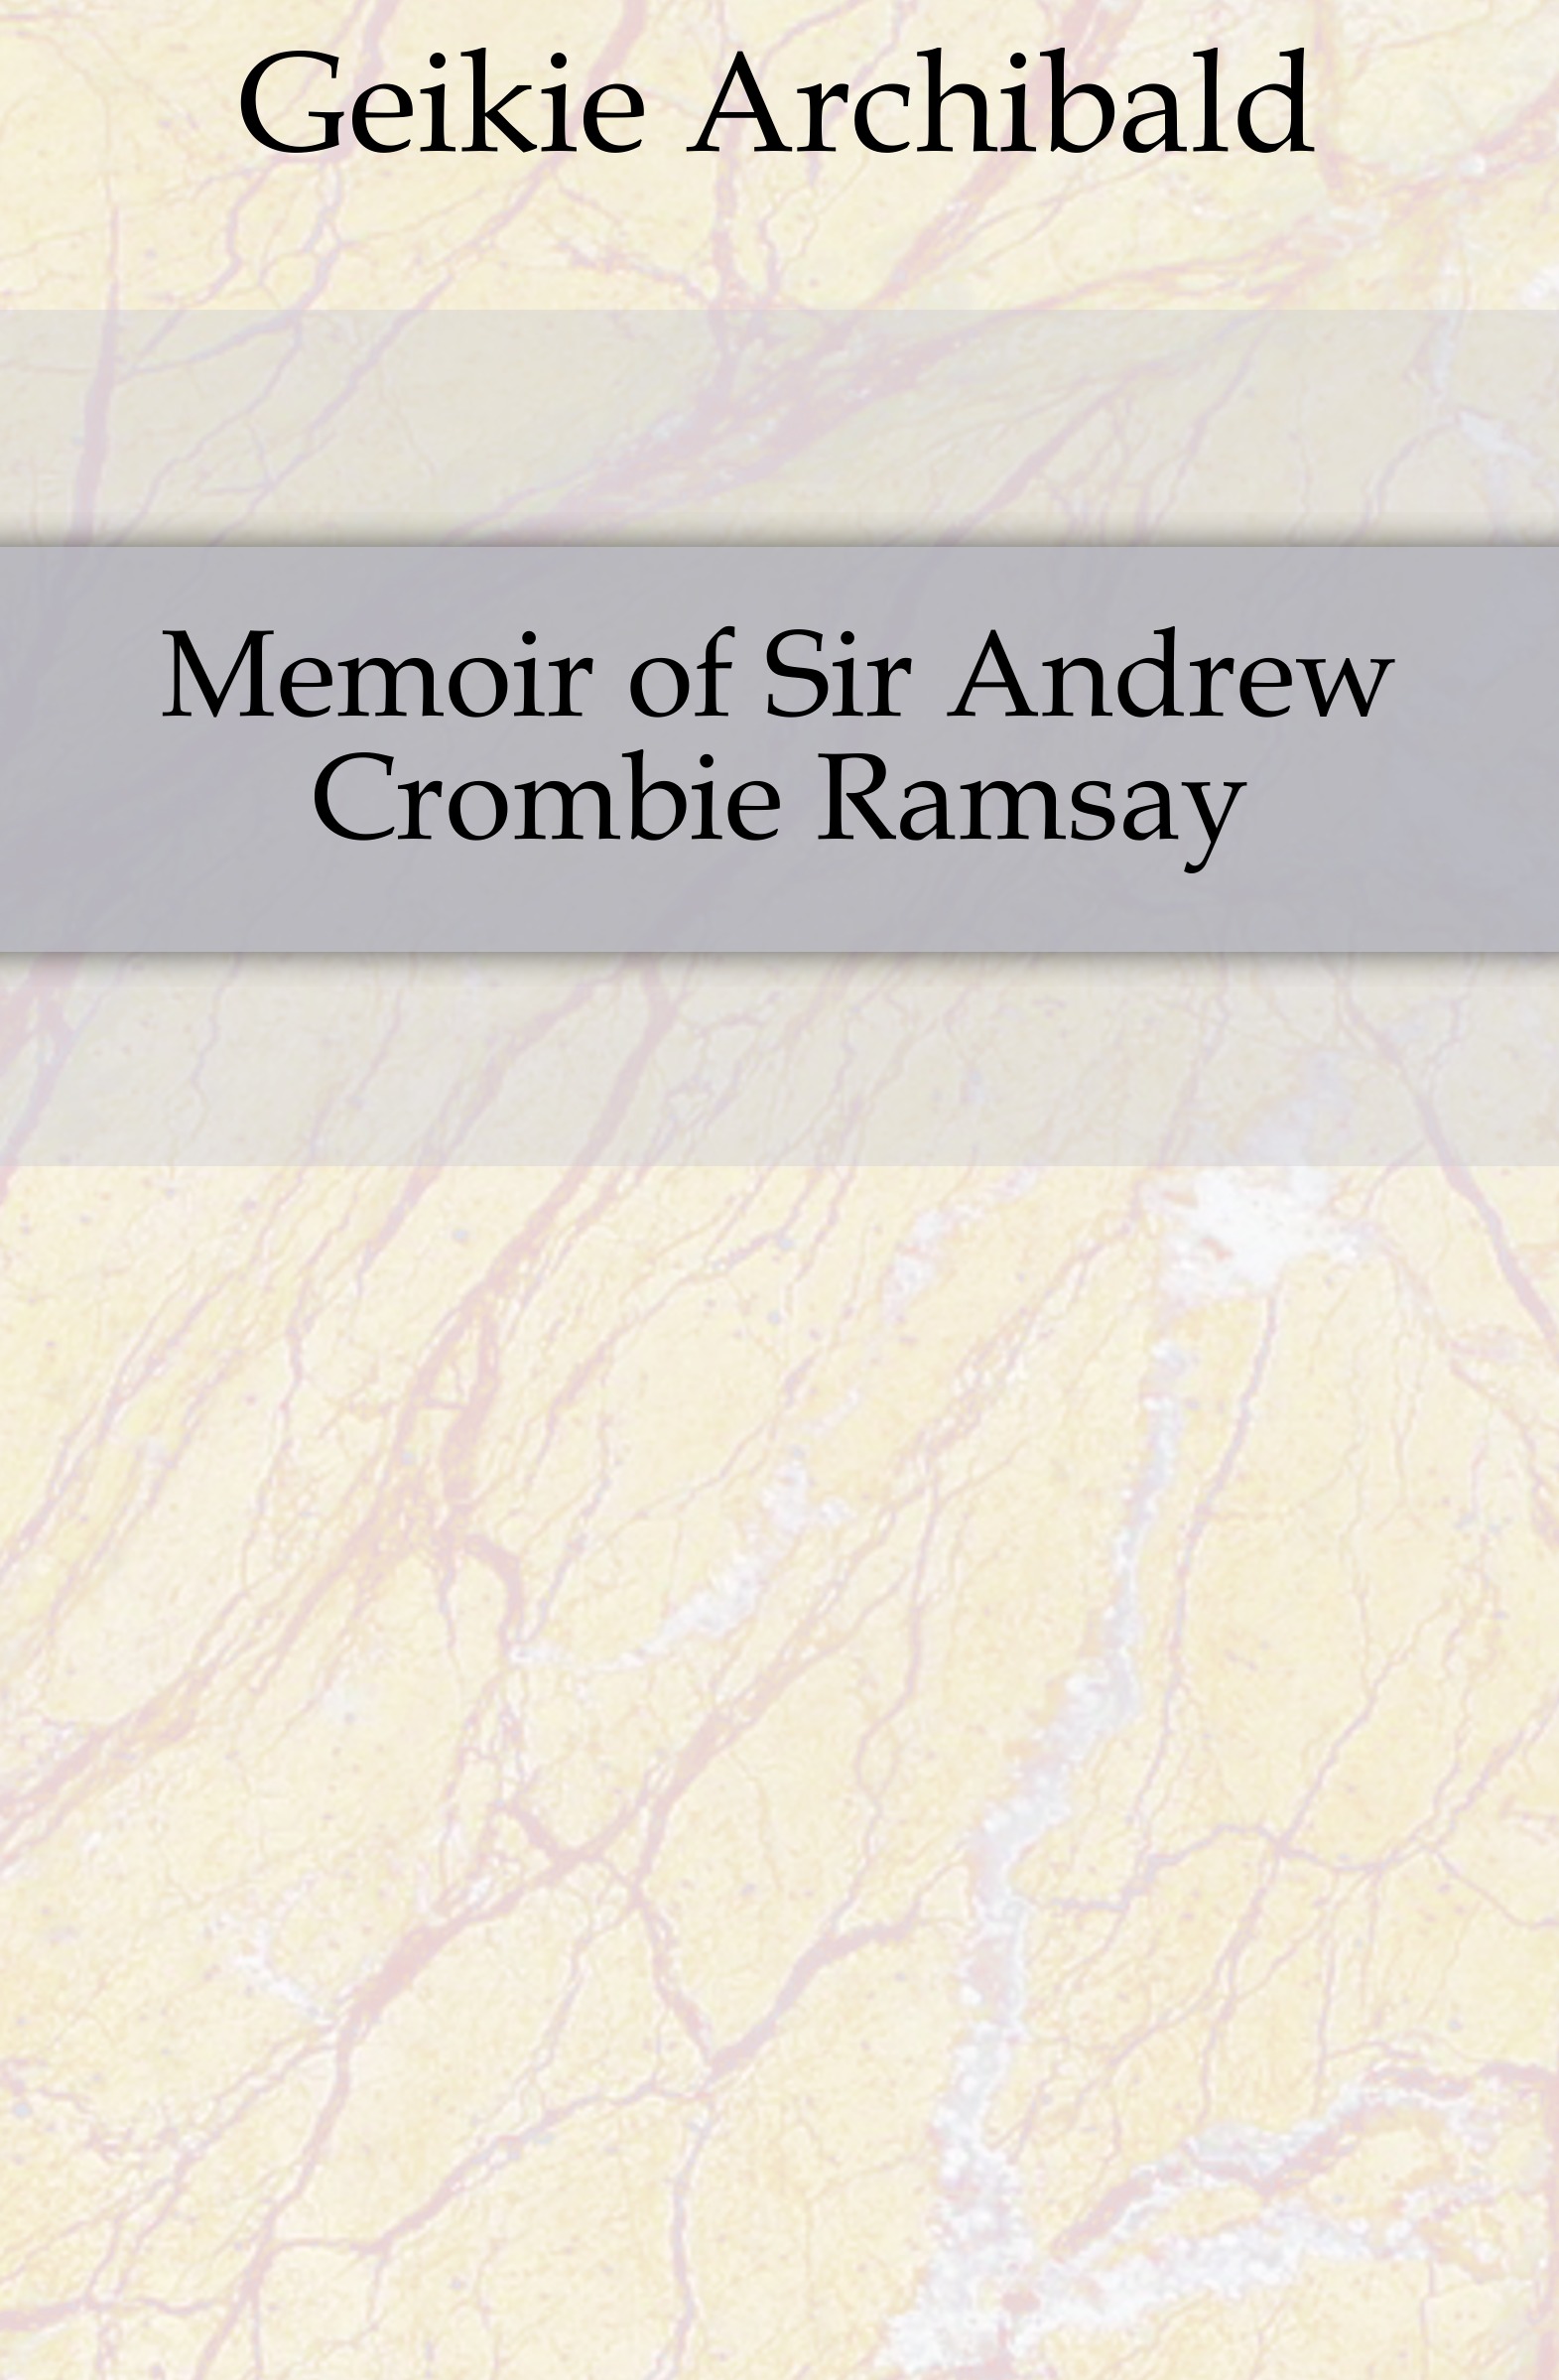 Geikie Archibald Memoir of Sir Andrew Crombie Ramsay